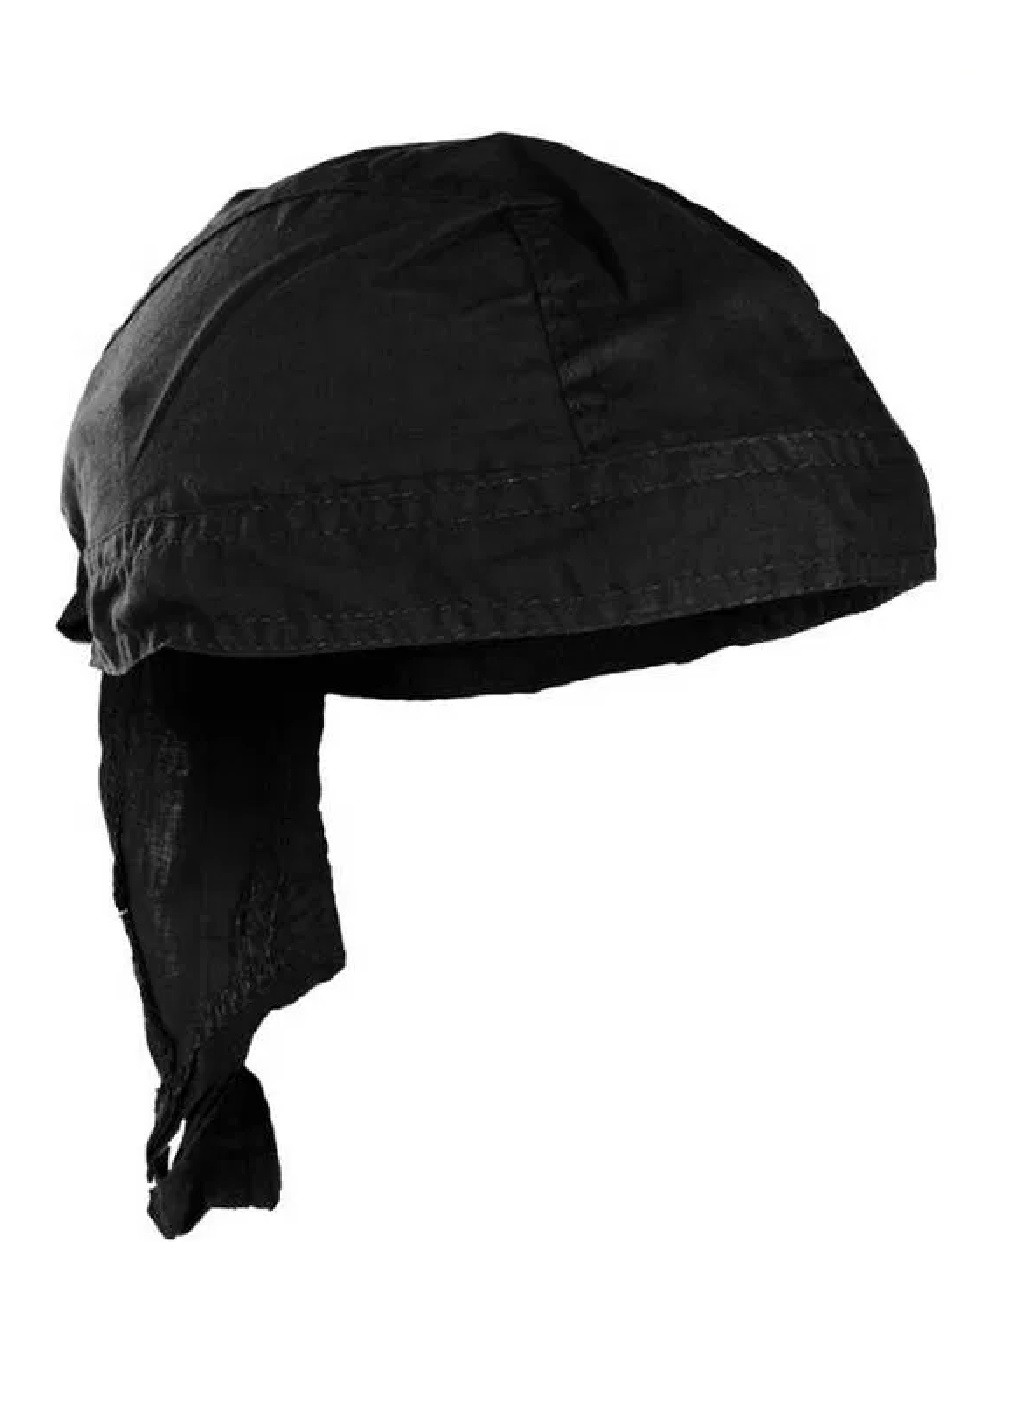 Бандана косынка на голову универсальная хлопковая дышащая для рыбалки охоты туризма походов (474112-Prob) Черная Unbranded (257374492)